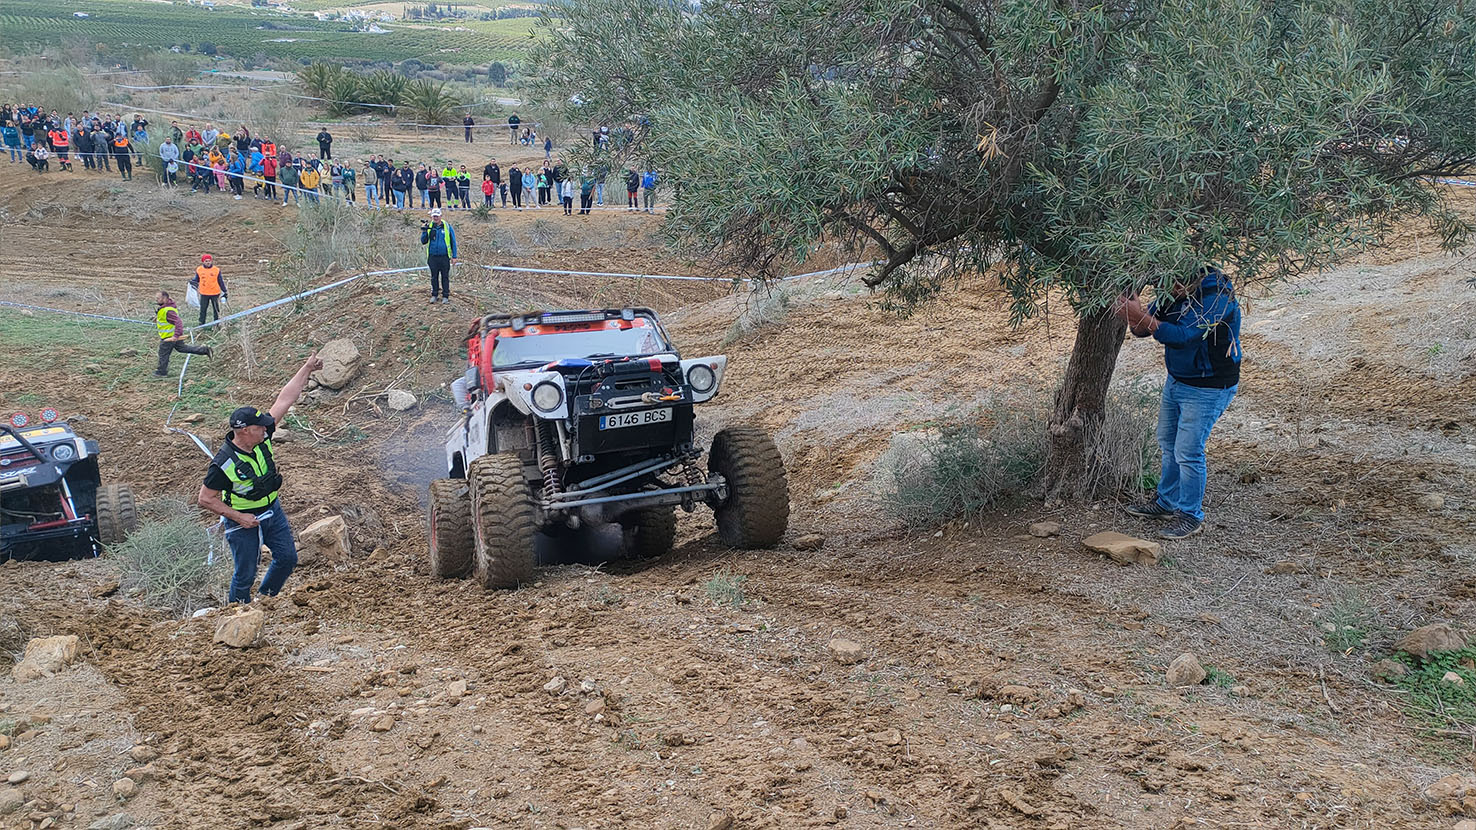 El equipo Factory Extreme, formado por Katchman Oliveira y Efren de León, consigue la victoria en Proto en su primera participación en el Extreme de Andalucía CAEX 4×4